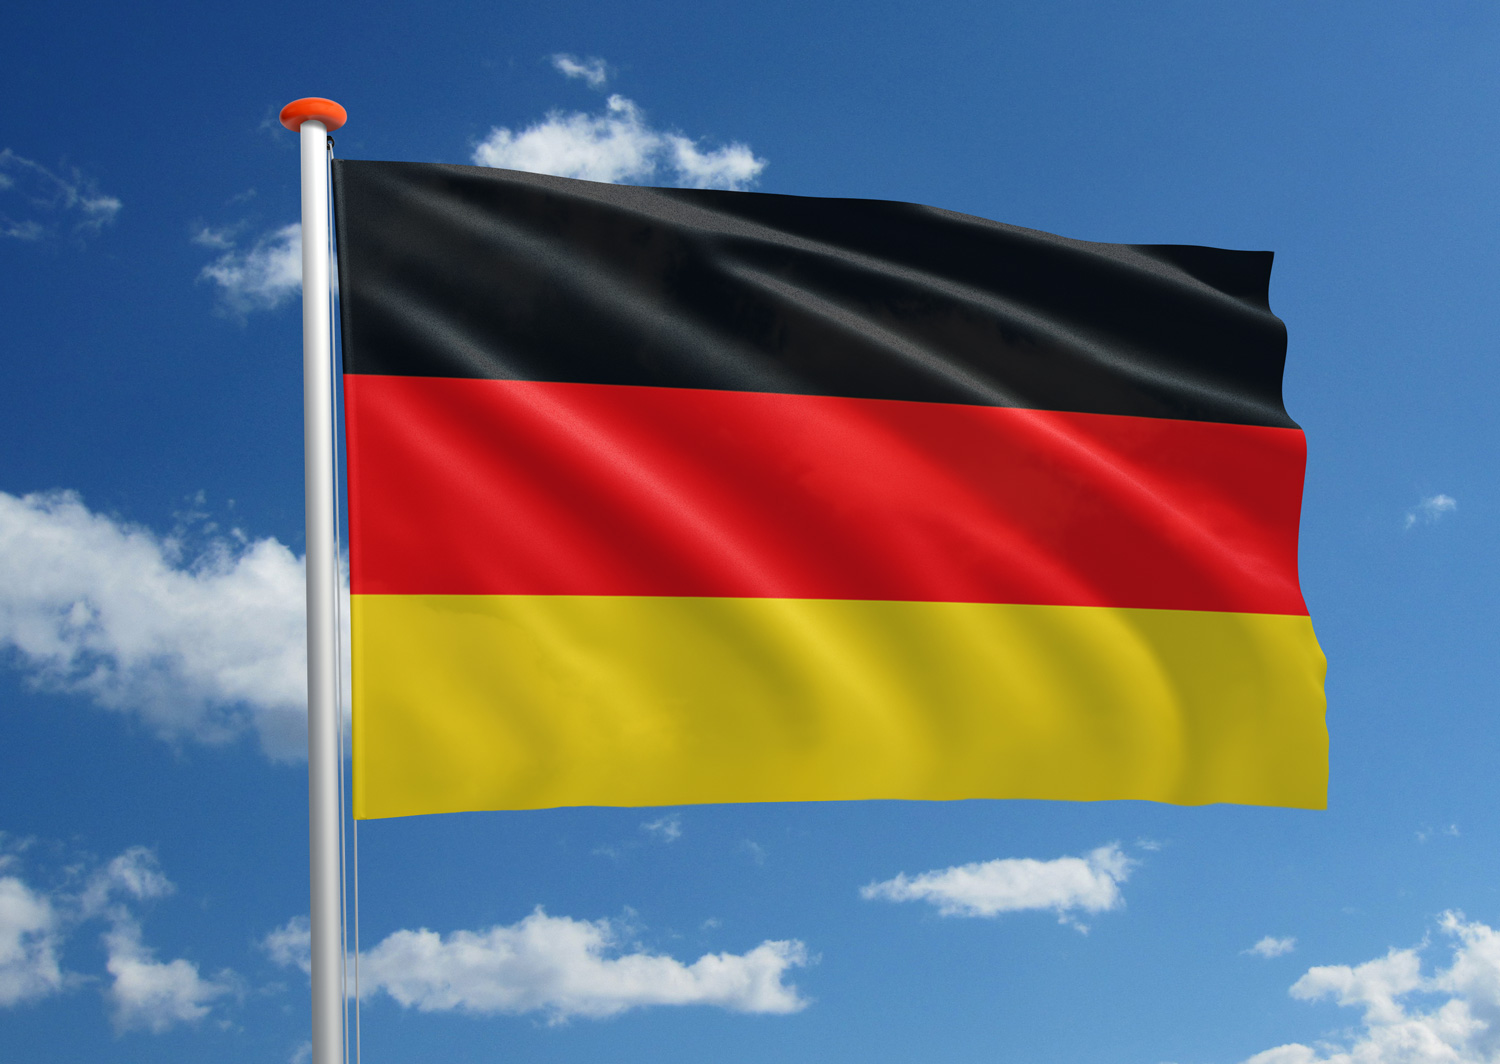 Prestatie Trojaanse paard Glimlach Vlag Duitsland | Bestel uw Duitse vlag bij MastenenVlaggen.nl